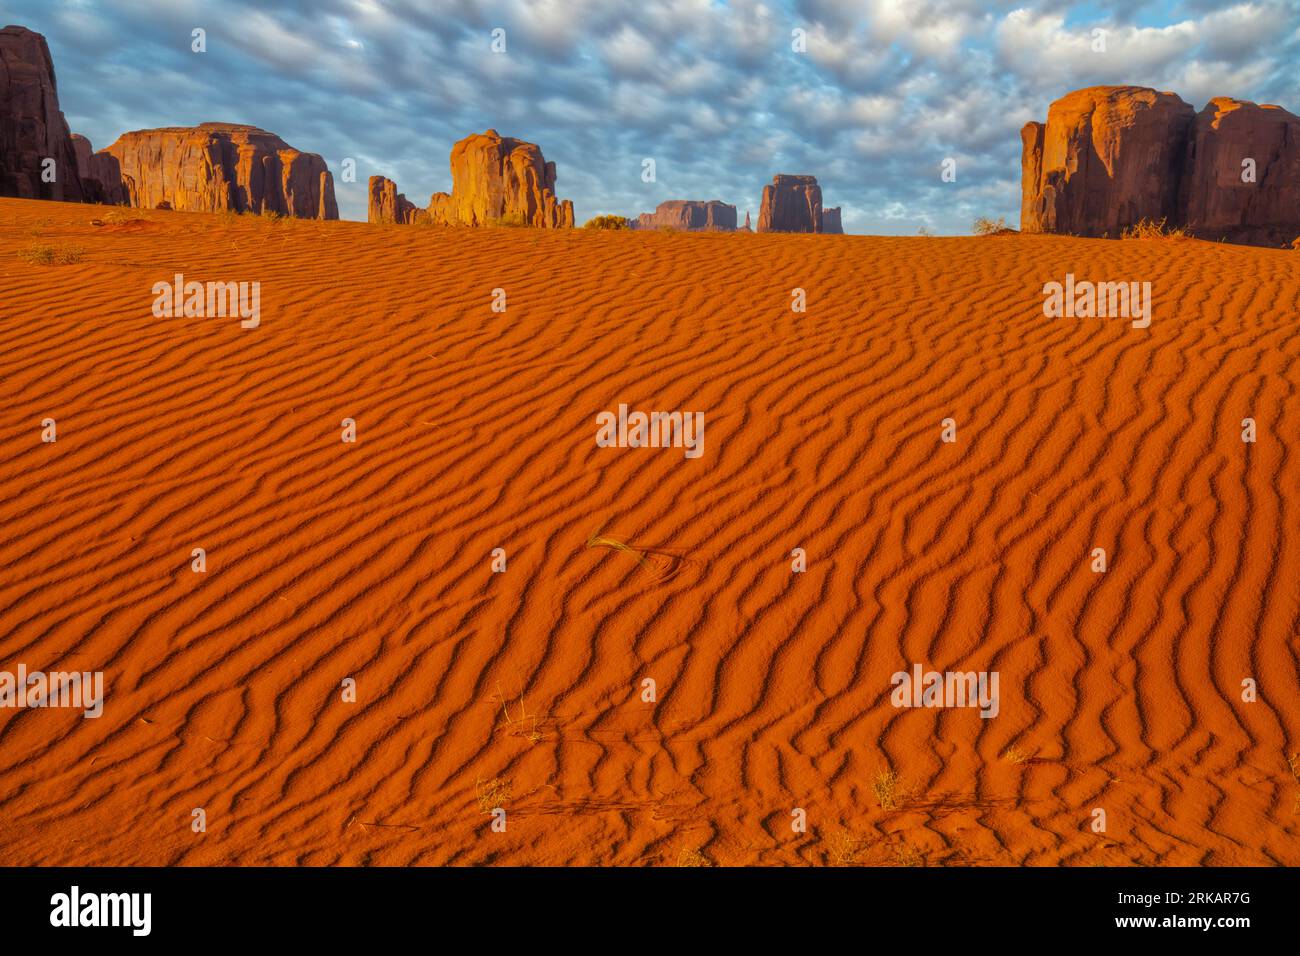 Dunes de sable et monuments, Monument Valley Tribal Park, Arizona Banque D'Images